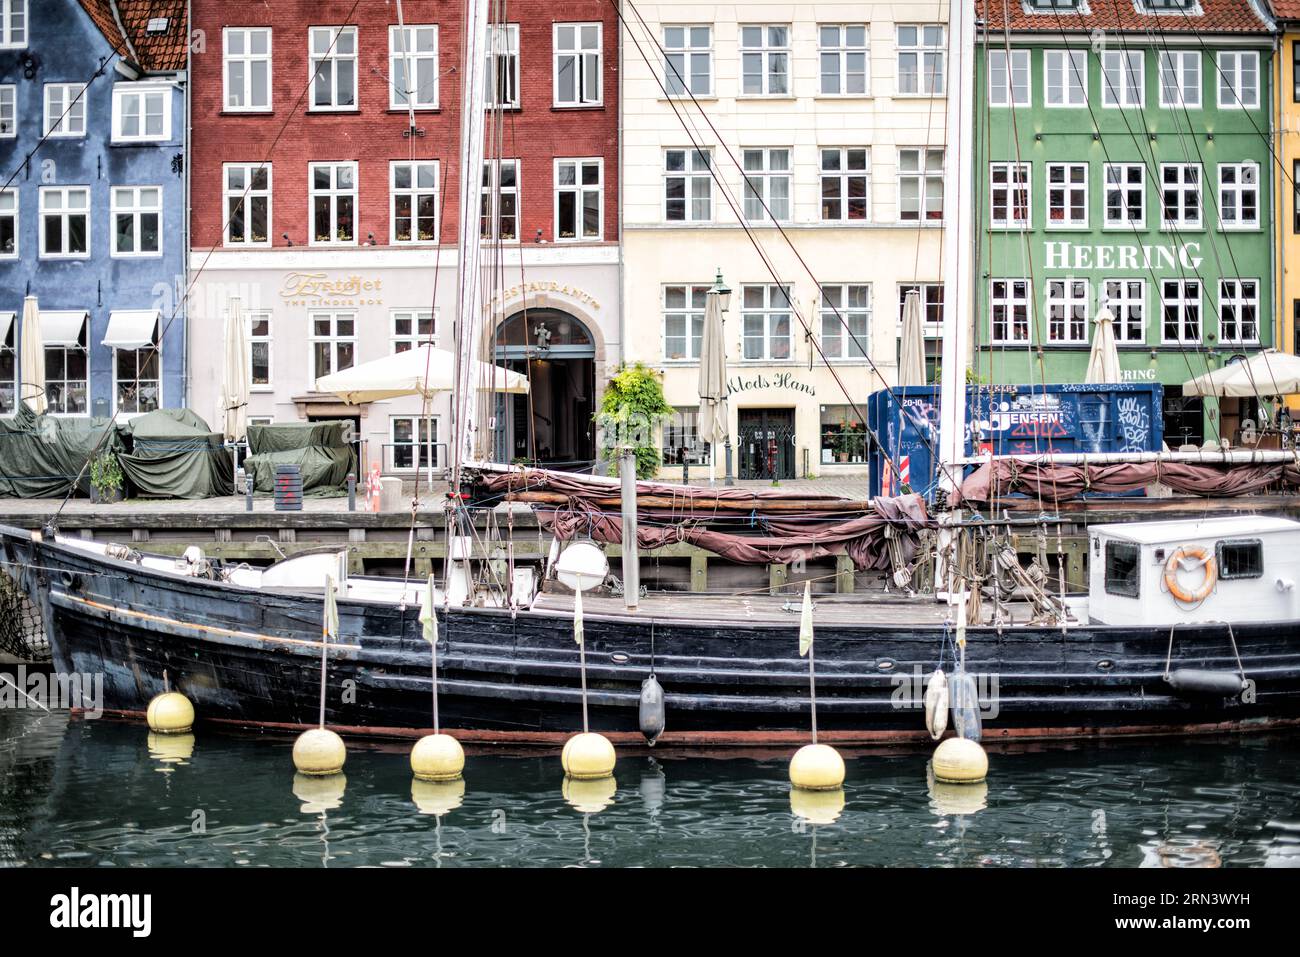 COPENAGHEN, Danimarca - Nyhavn, lo storico porto di Copenaghen, è visto animato da attività. Un tempo porto commerciale dove attraccavano navi da tutto il mondo, Nyhavn è ora un luogo di ritrovo culturale pieno di ristoranti, bar e case tradizionali, segnando la sua trasformazione da vivace centro marittimo a principale attrazione turistica. Foto Stock